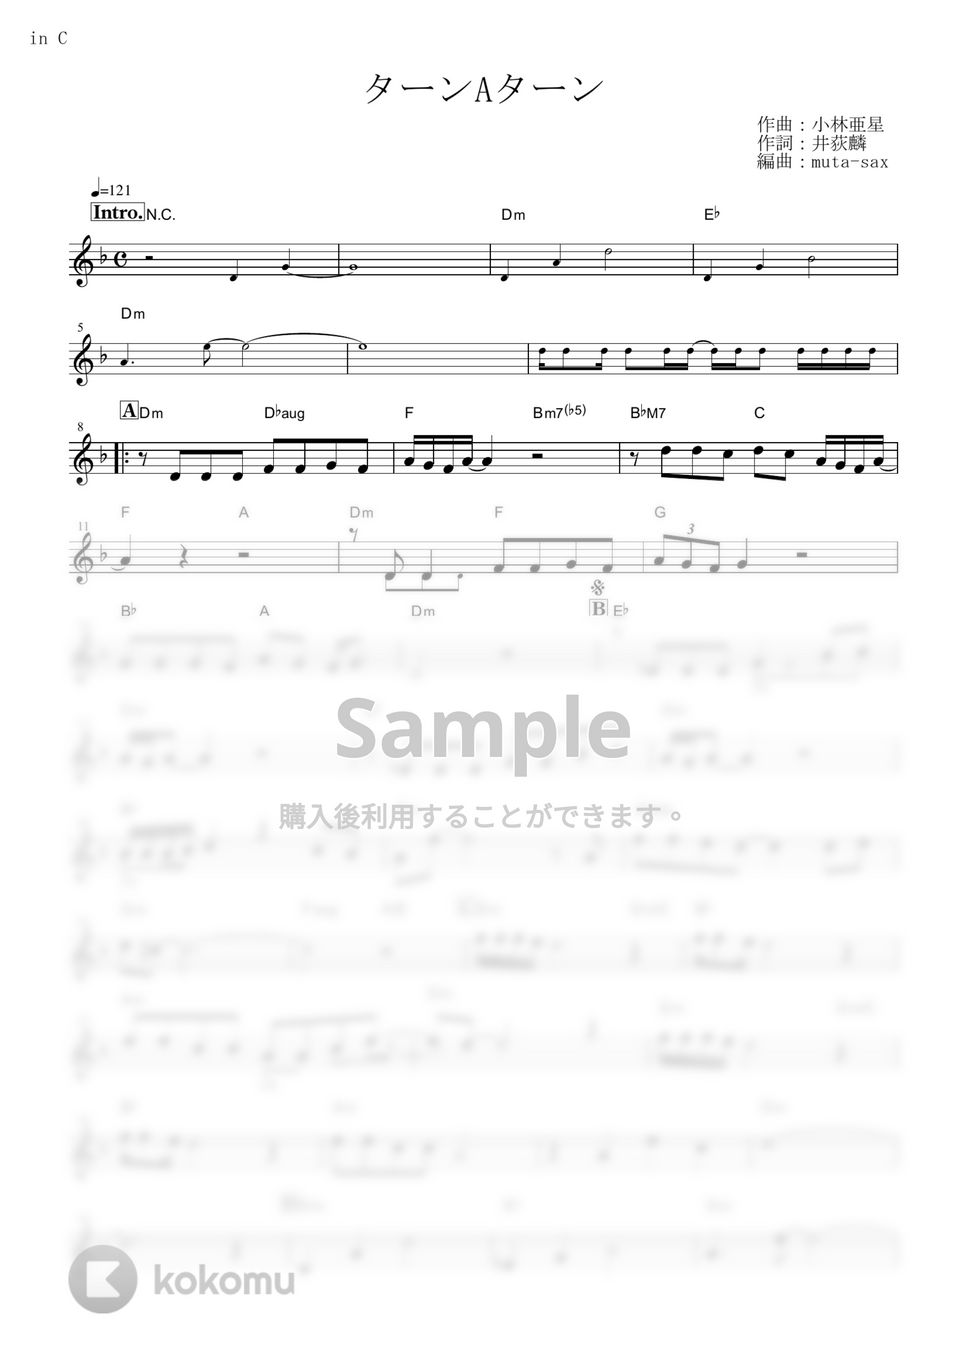 西城秀樹 - ターンAターン (『∀ガンダム』 / in C) by muta-sax